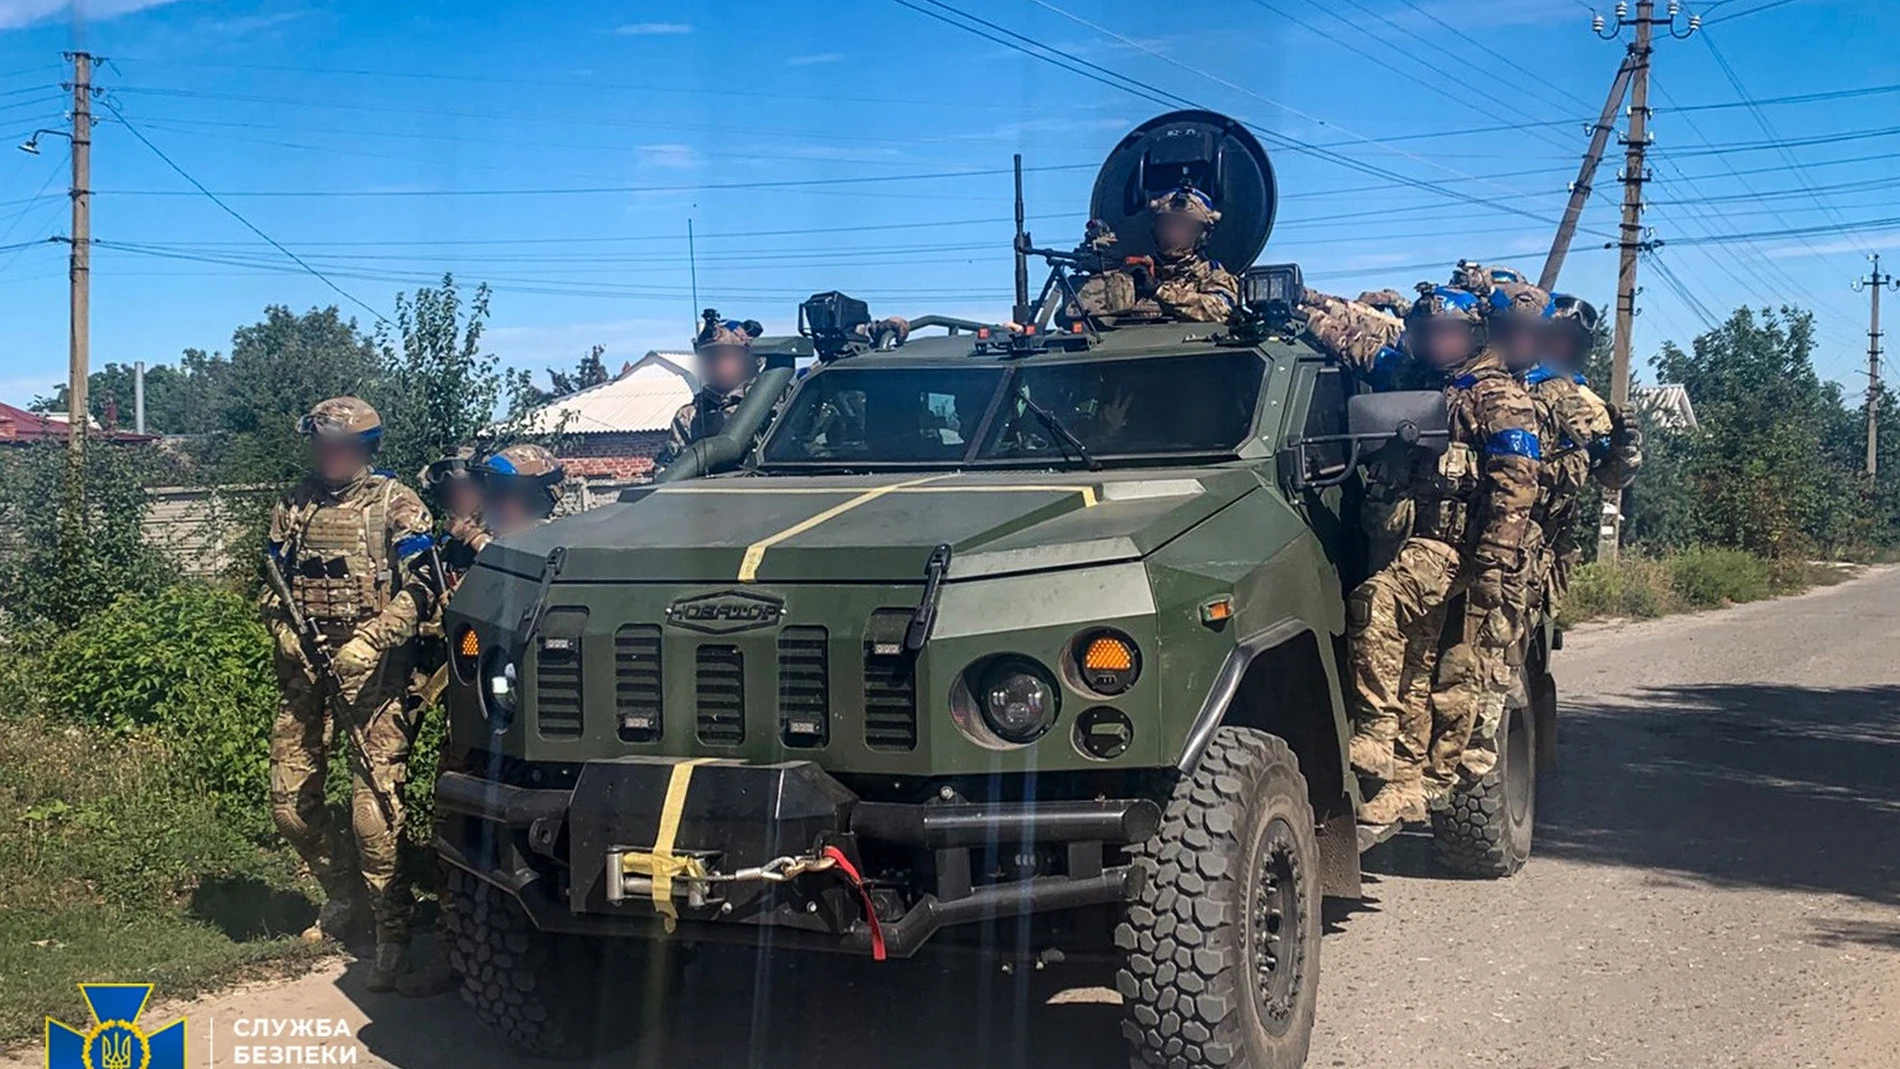 Vehículo blindado de las Fuerzas Armadas de Ucrania